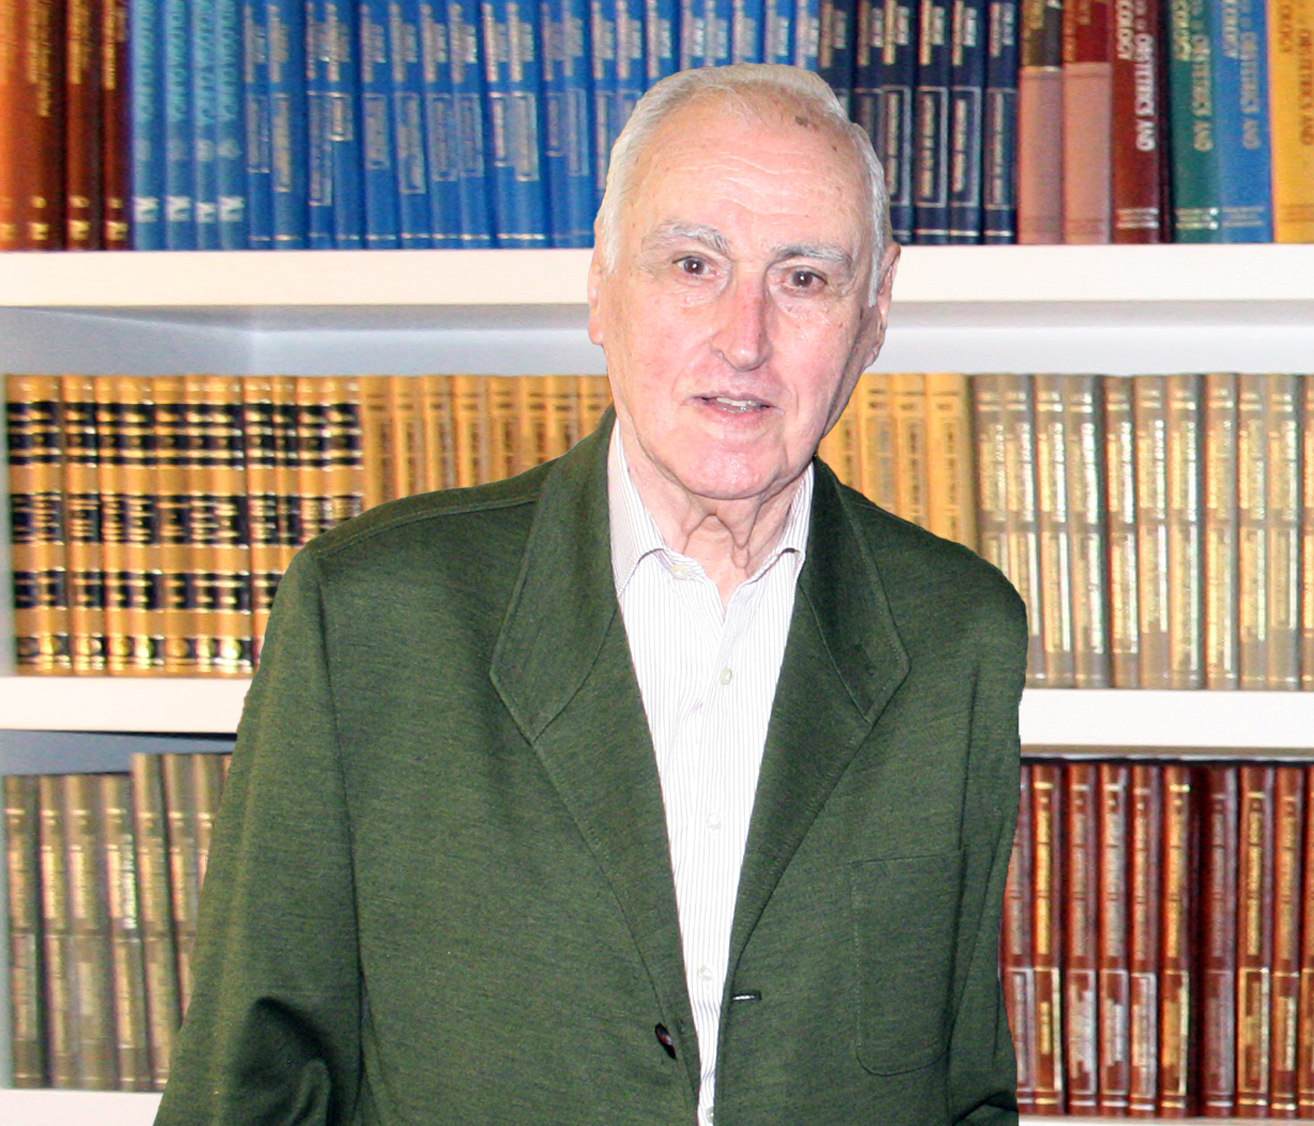 Fallece el doctor y profesor José Antonio Usandizaga Beguiristáin, presidente de honor de la Sociedad Española de Ginecología y Obstetricia, y un referente en este ámbito en las últimas décadas en España